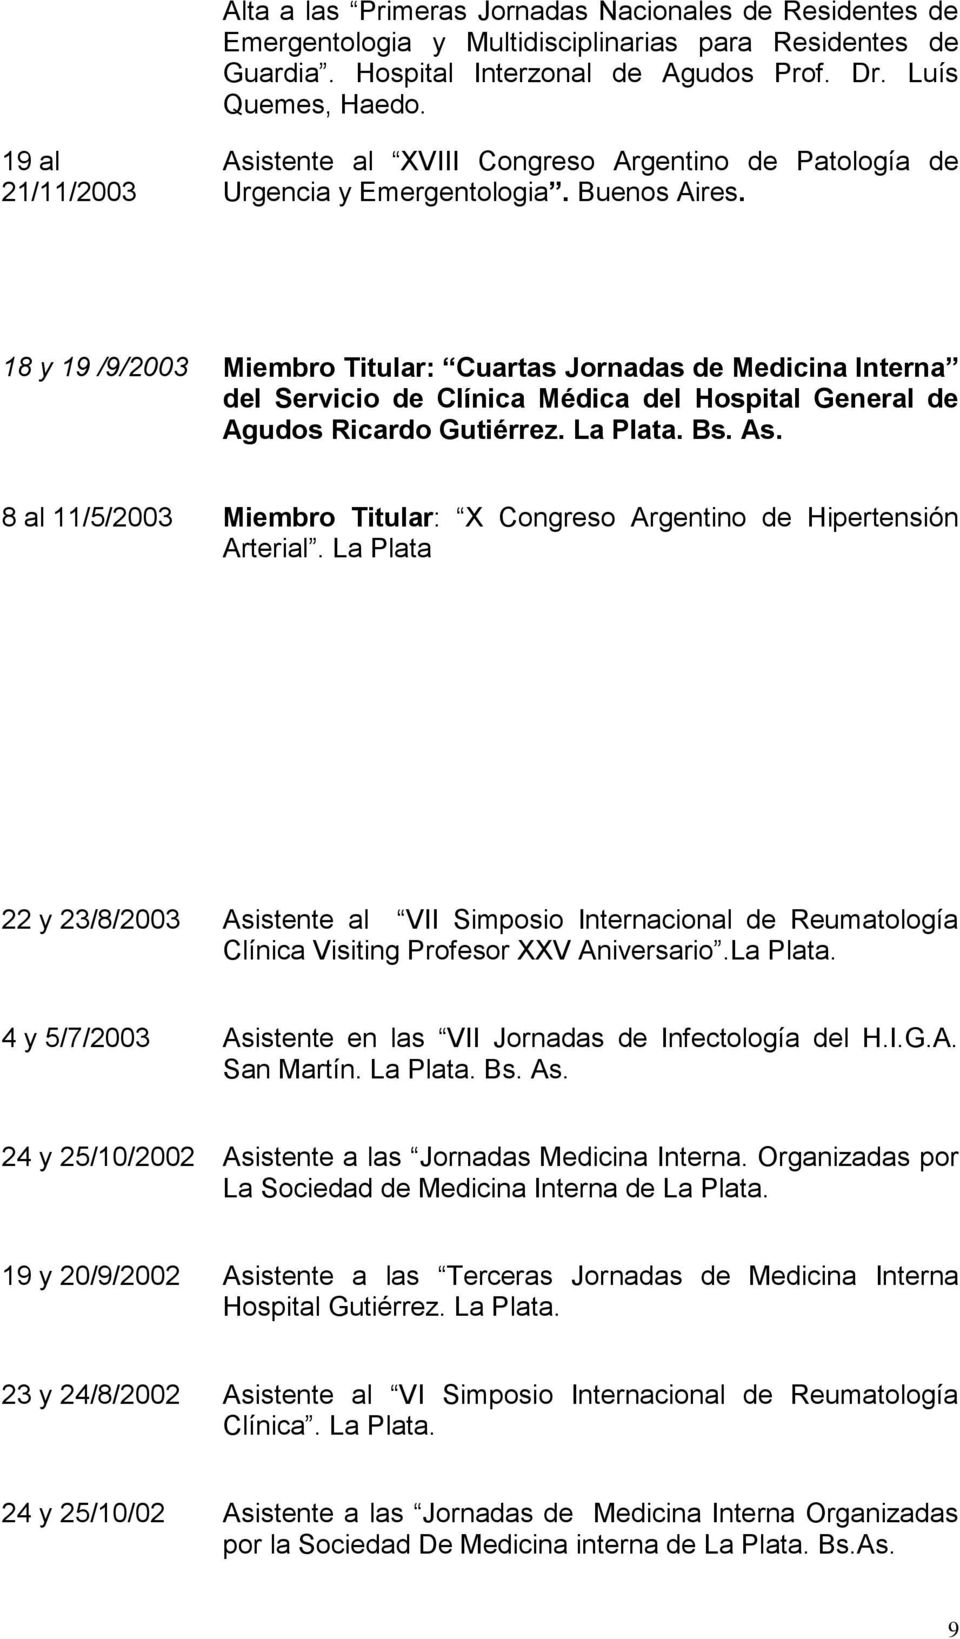 18 y 19 /9/2003 Miembro Titular: Cuartas Jornadas de Medicina Interna del Servicio de Clínica Médica del Hospital General de Agudos Ricardo Gutiérrez. La Plata. Bs. As.